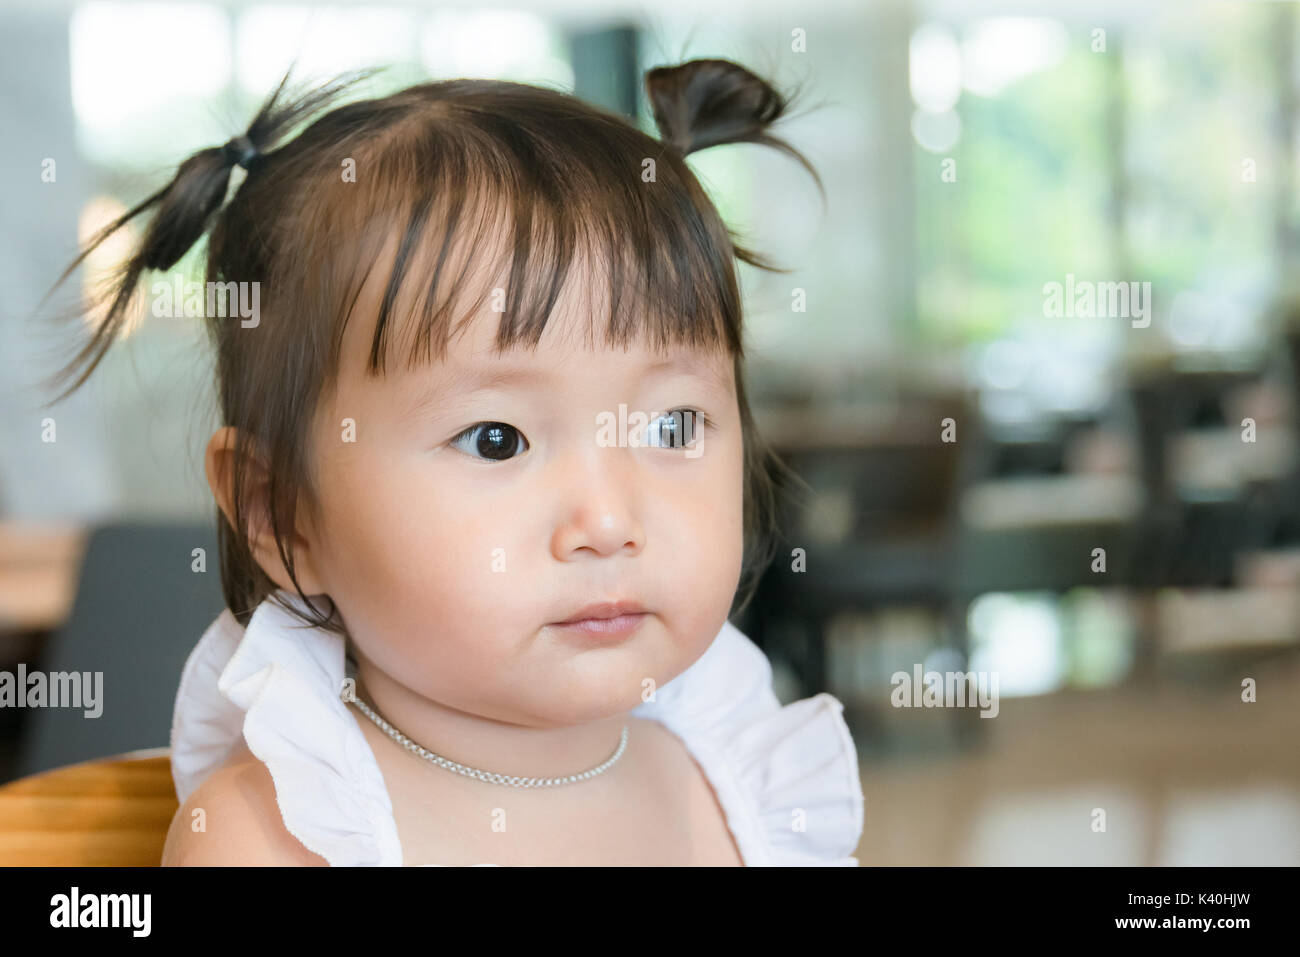 Retrato de niña de 2 años, enfrenta cara sonriente en el fondo con el espacio interior Foto de stock